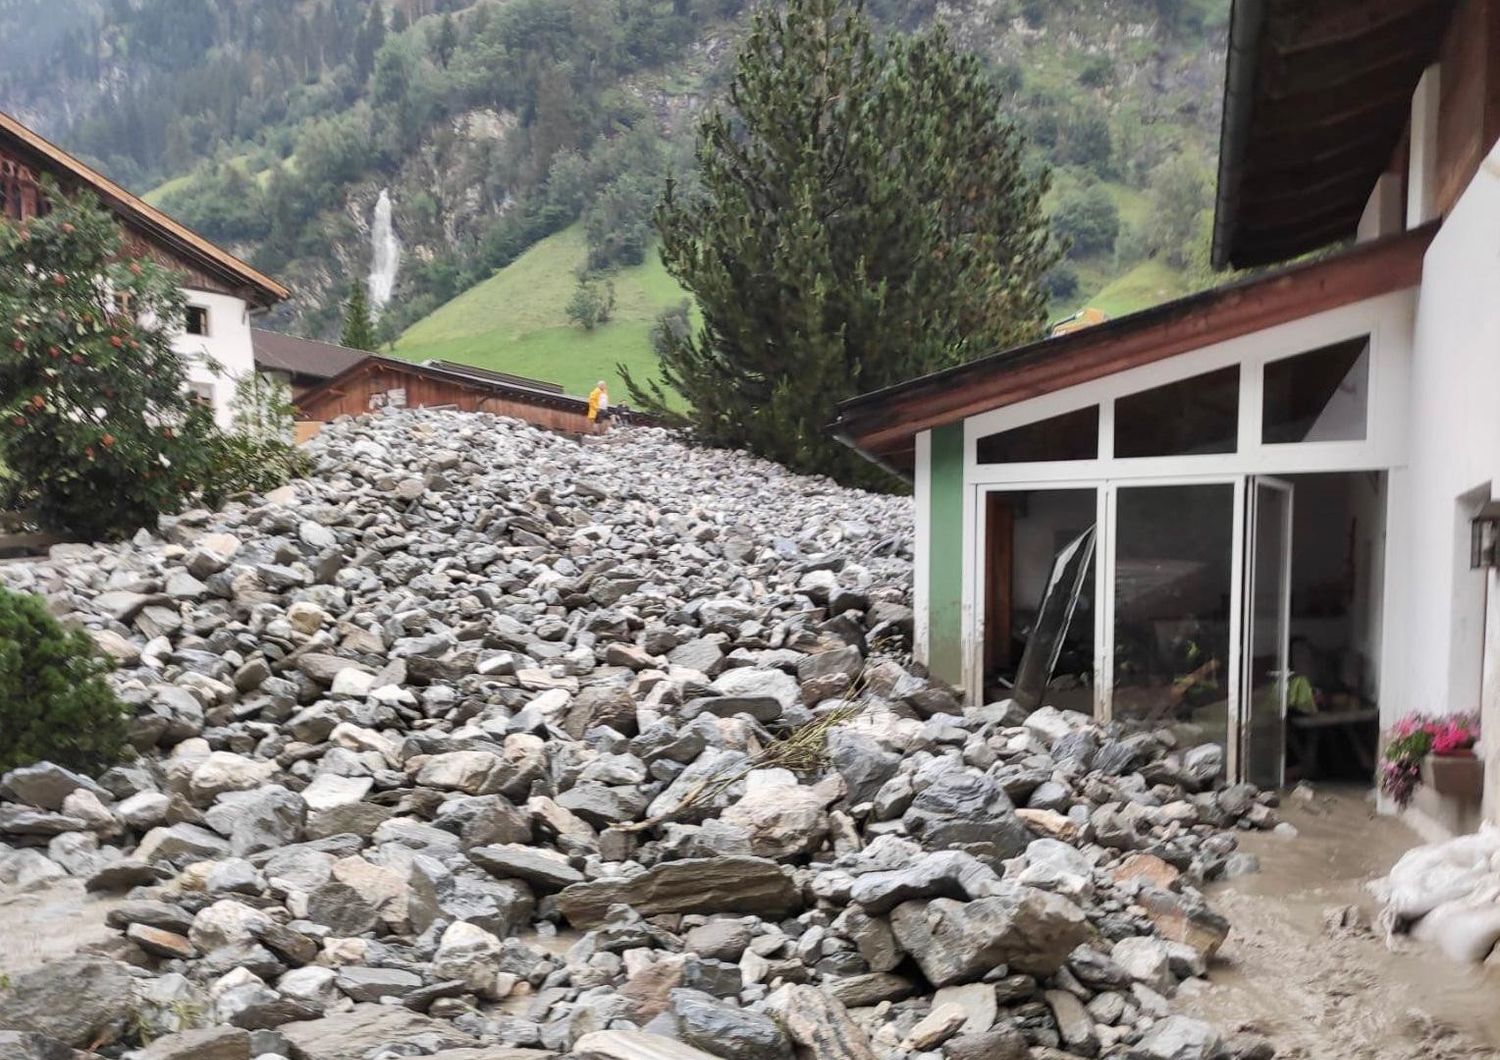 Piogge torrenziali dopo siccita strade chiuse danni Alto Adige